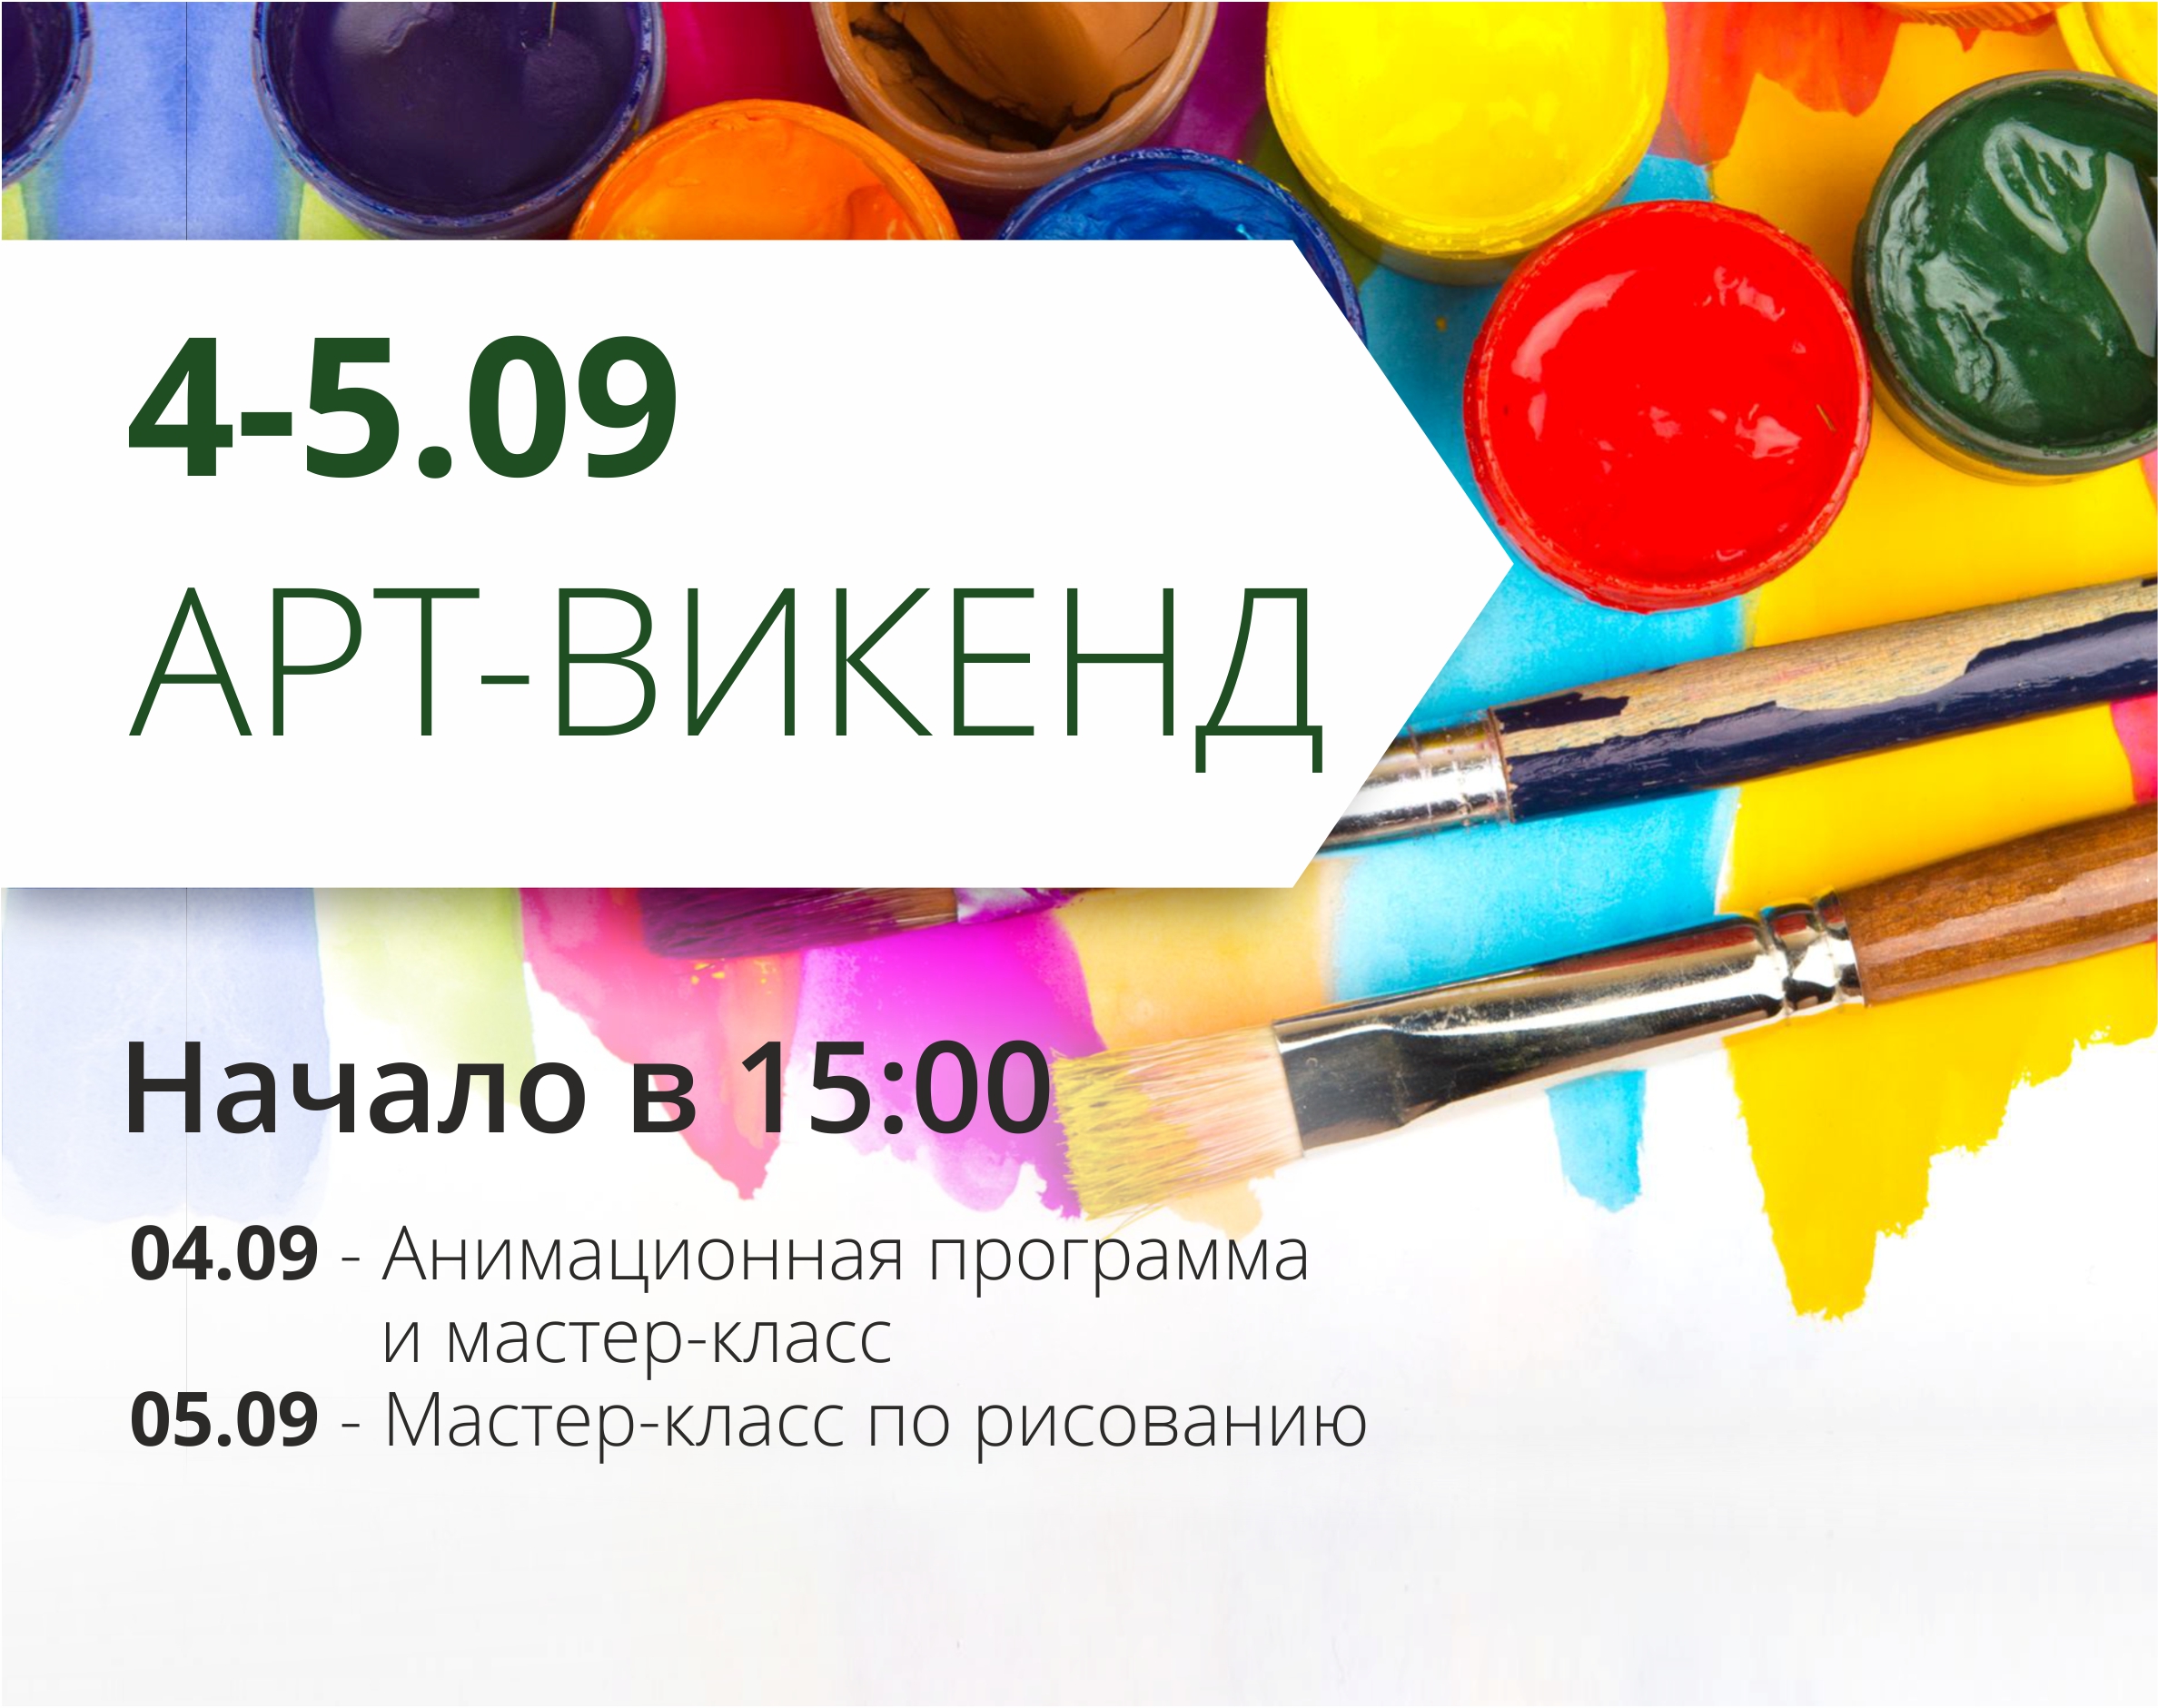 ТРЦ "Любава" приглашает на первый осенний арт-уикенд